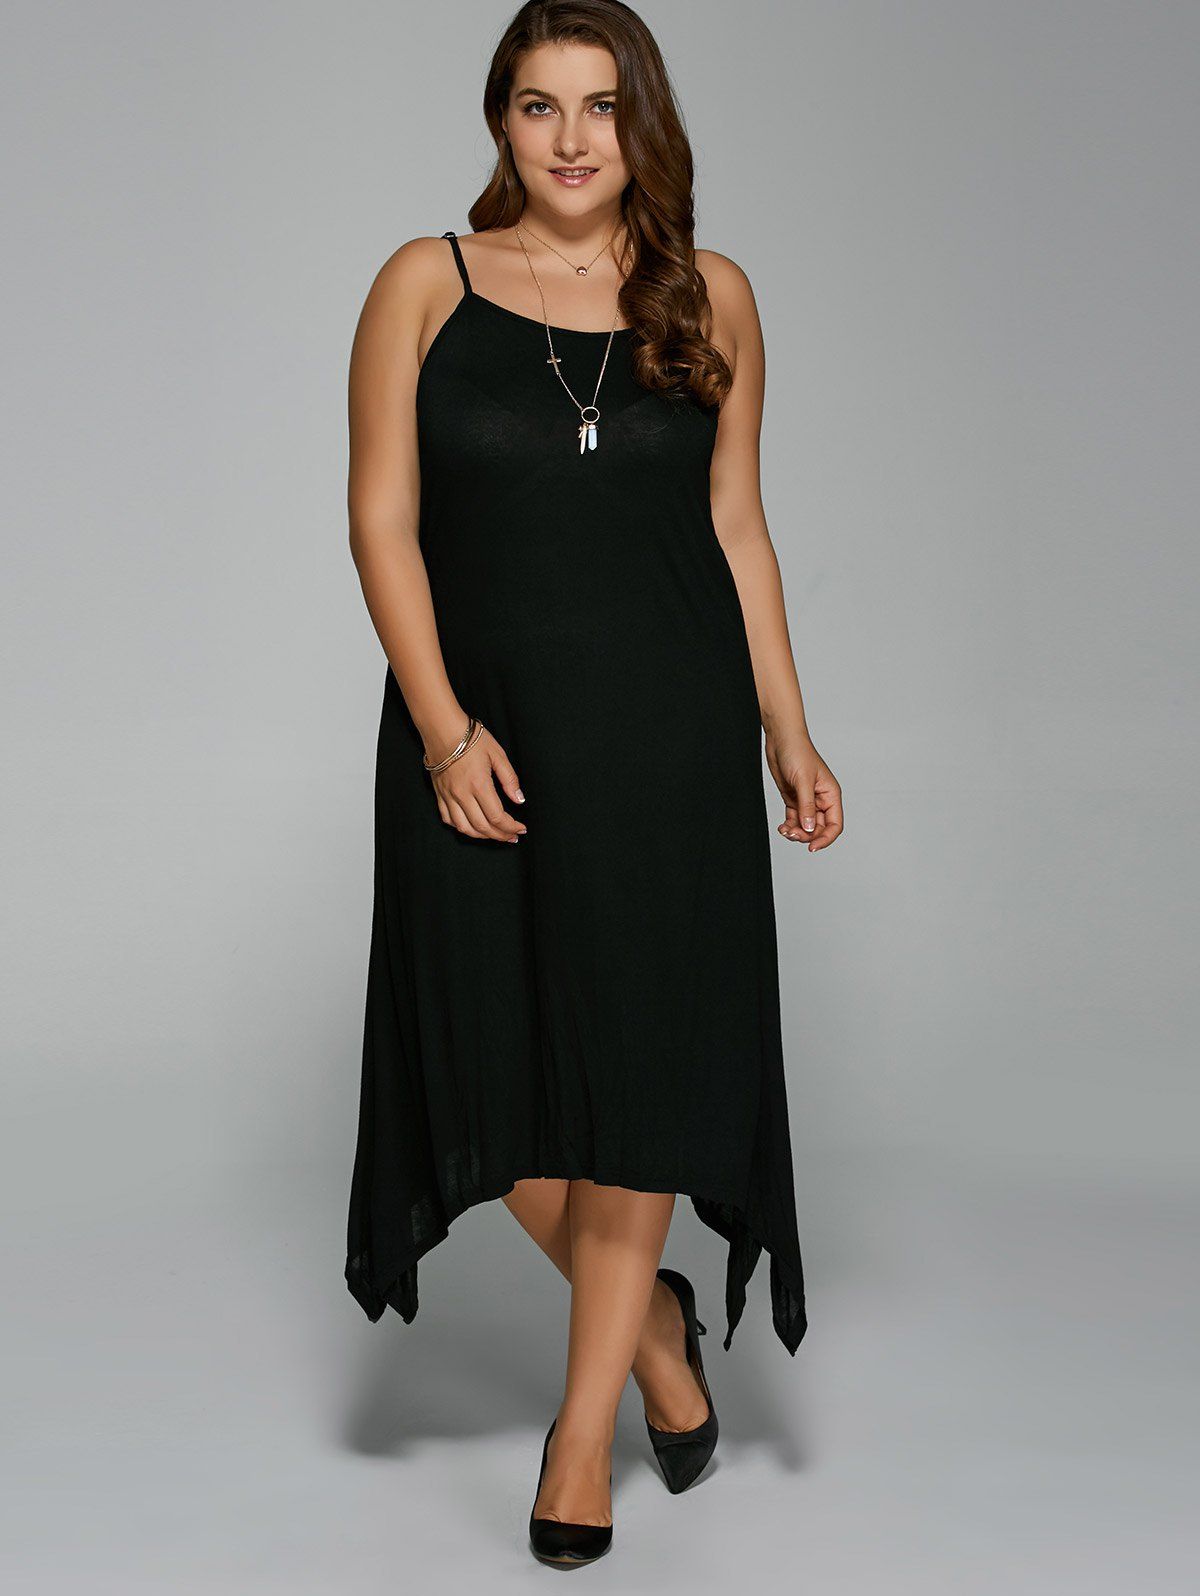 Black Plus Size Asymmetric Hem Spaghetti Strap Dress ...
